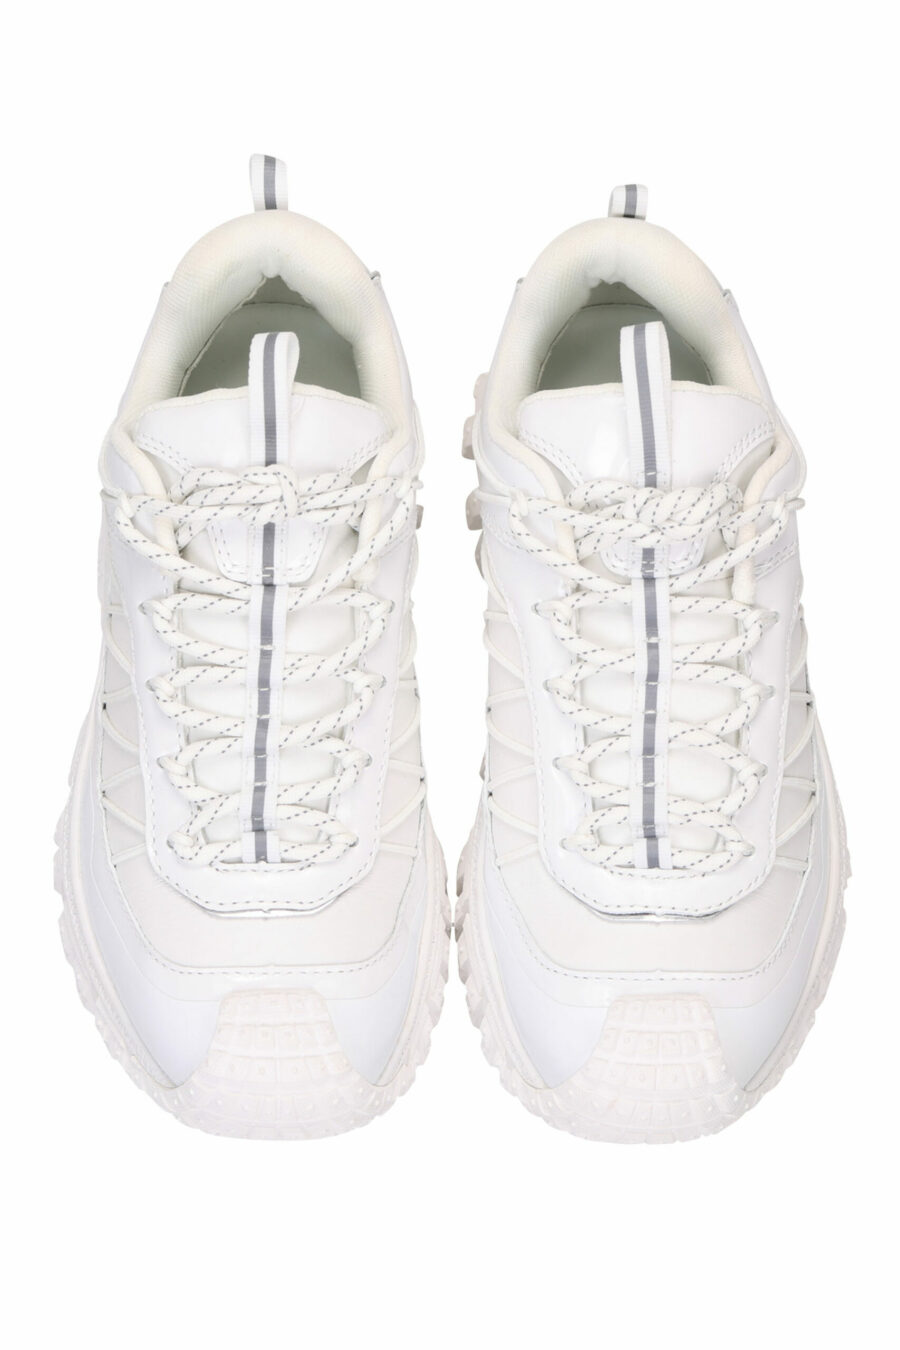 Zapatillas blancas con suela gruesa y minilogo - 5059529319099 4 scaled